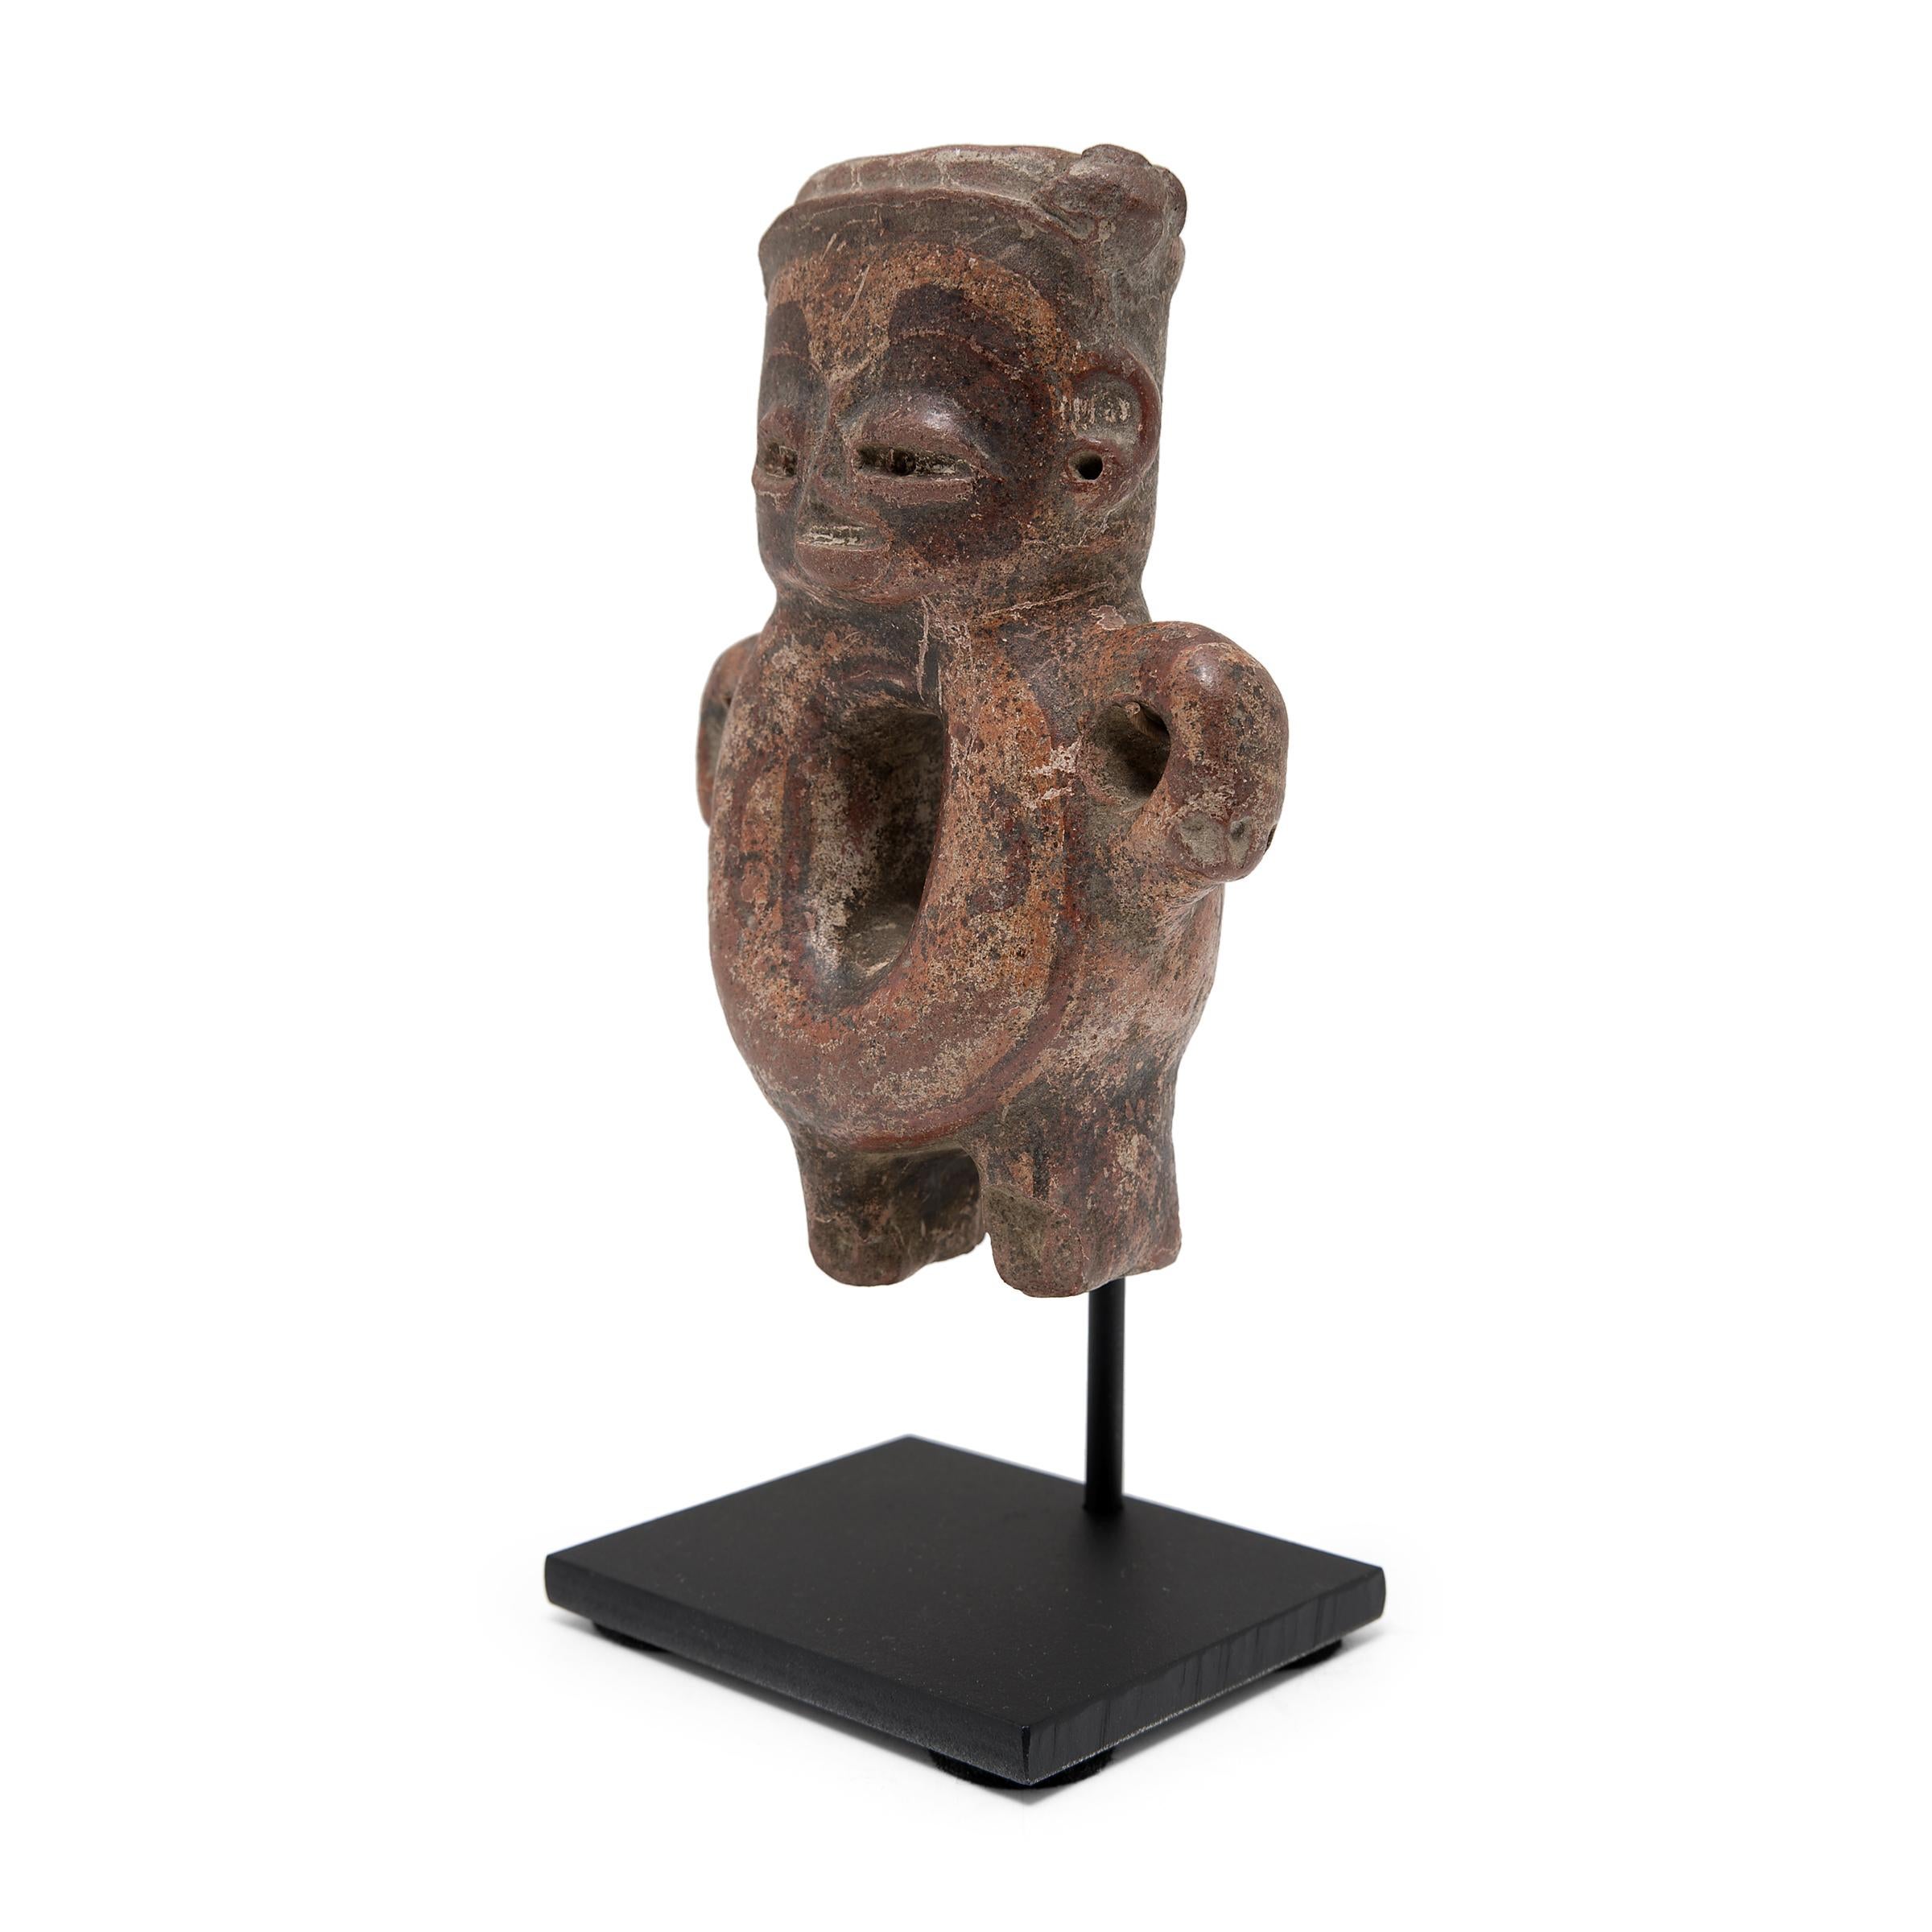 Diese stehende Figur wurde 300 v. Chr. in der antiken Region Chupicuaro in Mexiko hergestellt und diente wahrscheinlich als rituelle oder Grabbeigabe. Die Keramikarbeiten der Chupicuaro zeichnen sich häufig durch ihre schrägen, kaffeebohnenförmigen